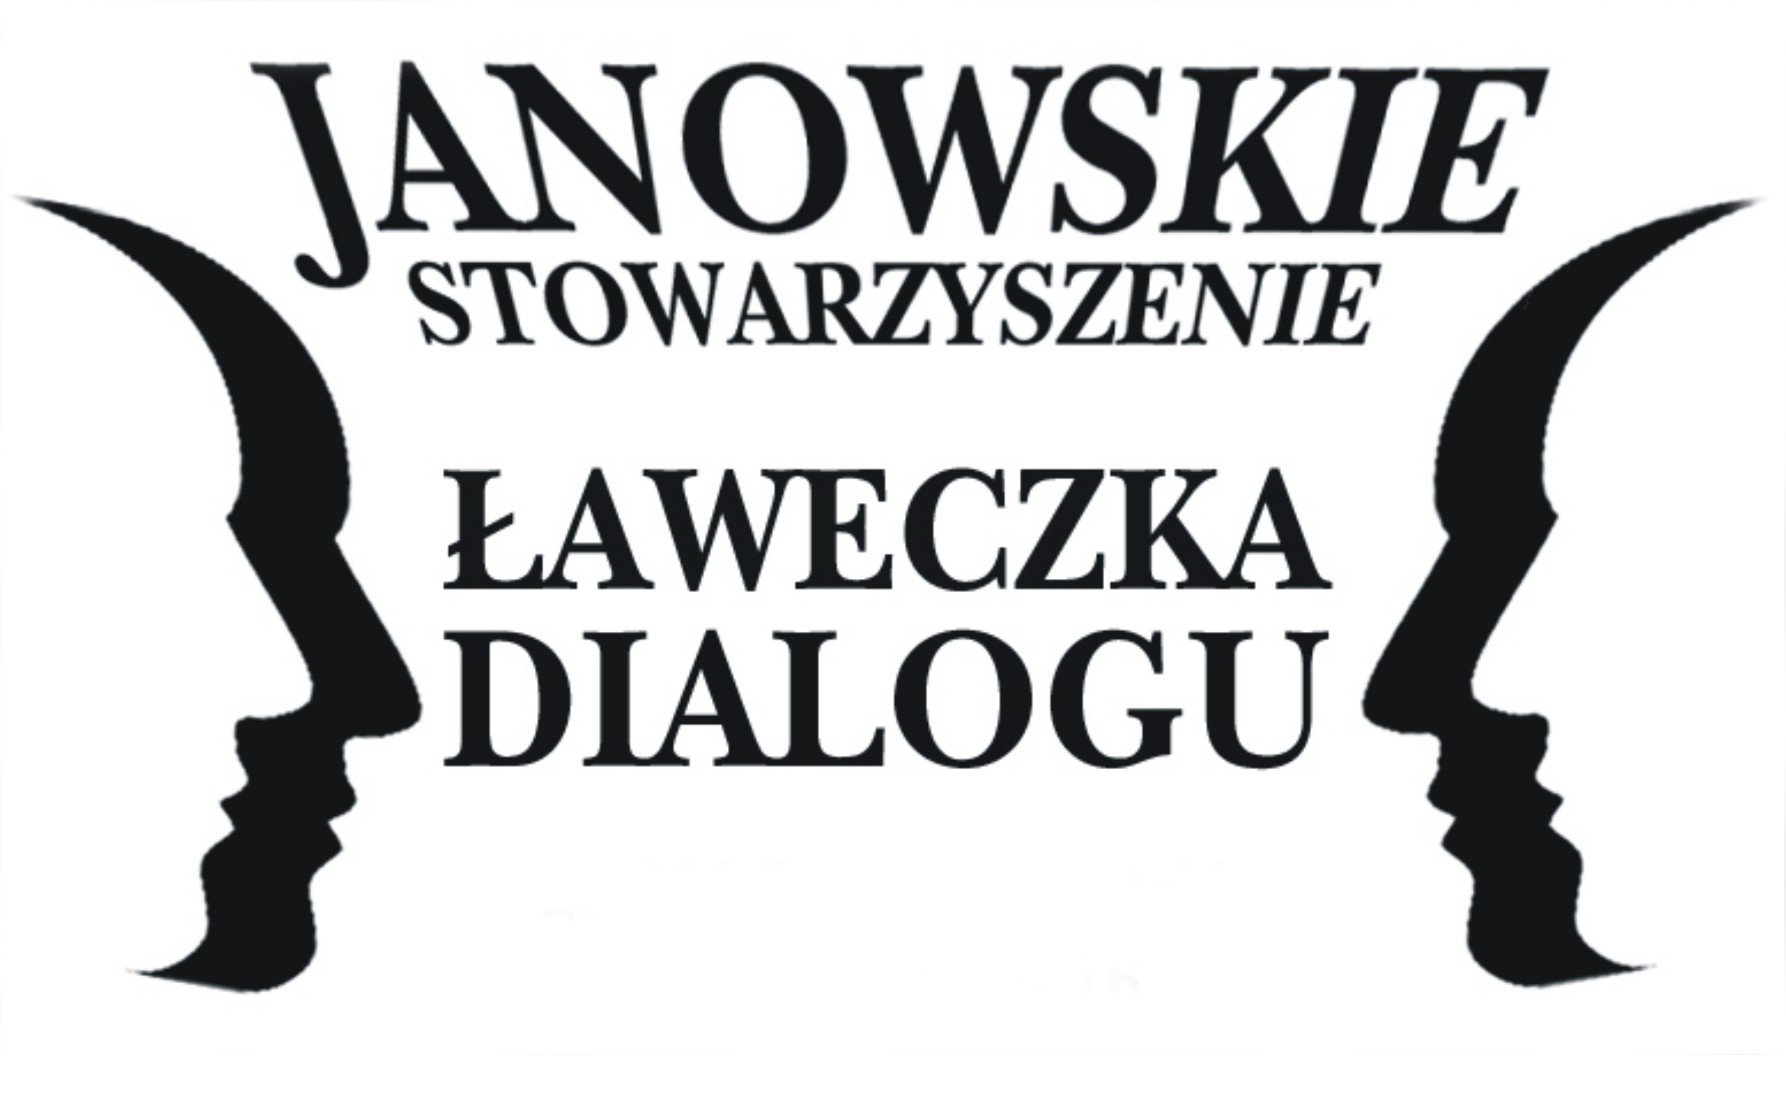 Janowskie Stowarzyszenie Ławeczka Dialogu.